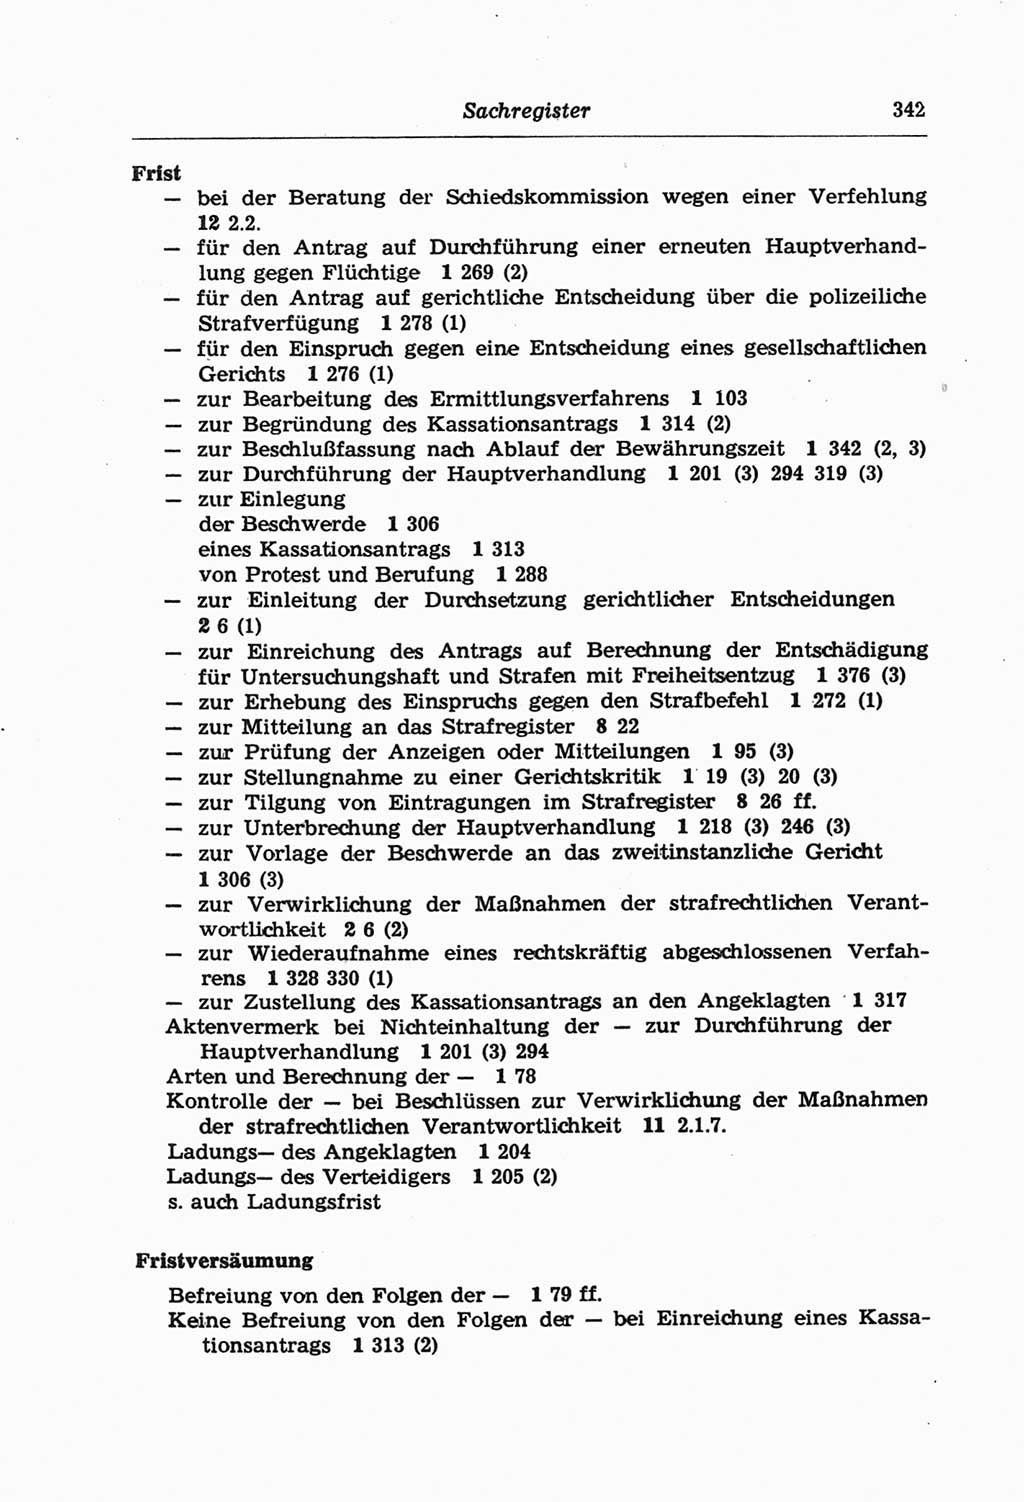 Strafprozeßordnung (StPO) der Deutschen Demokratischen Republik (DDR) und angrenzende Gesetze und Bestimmungen 1968, Seite 342 (StPO Ges. Bstgn. DDR 1968, S. 342)